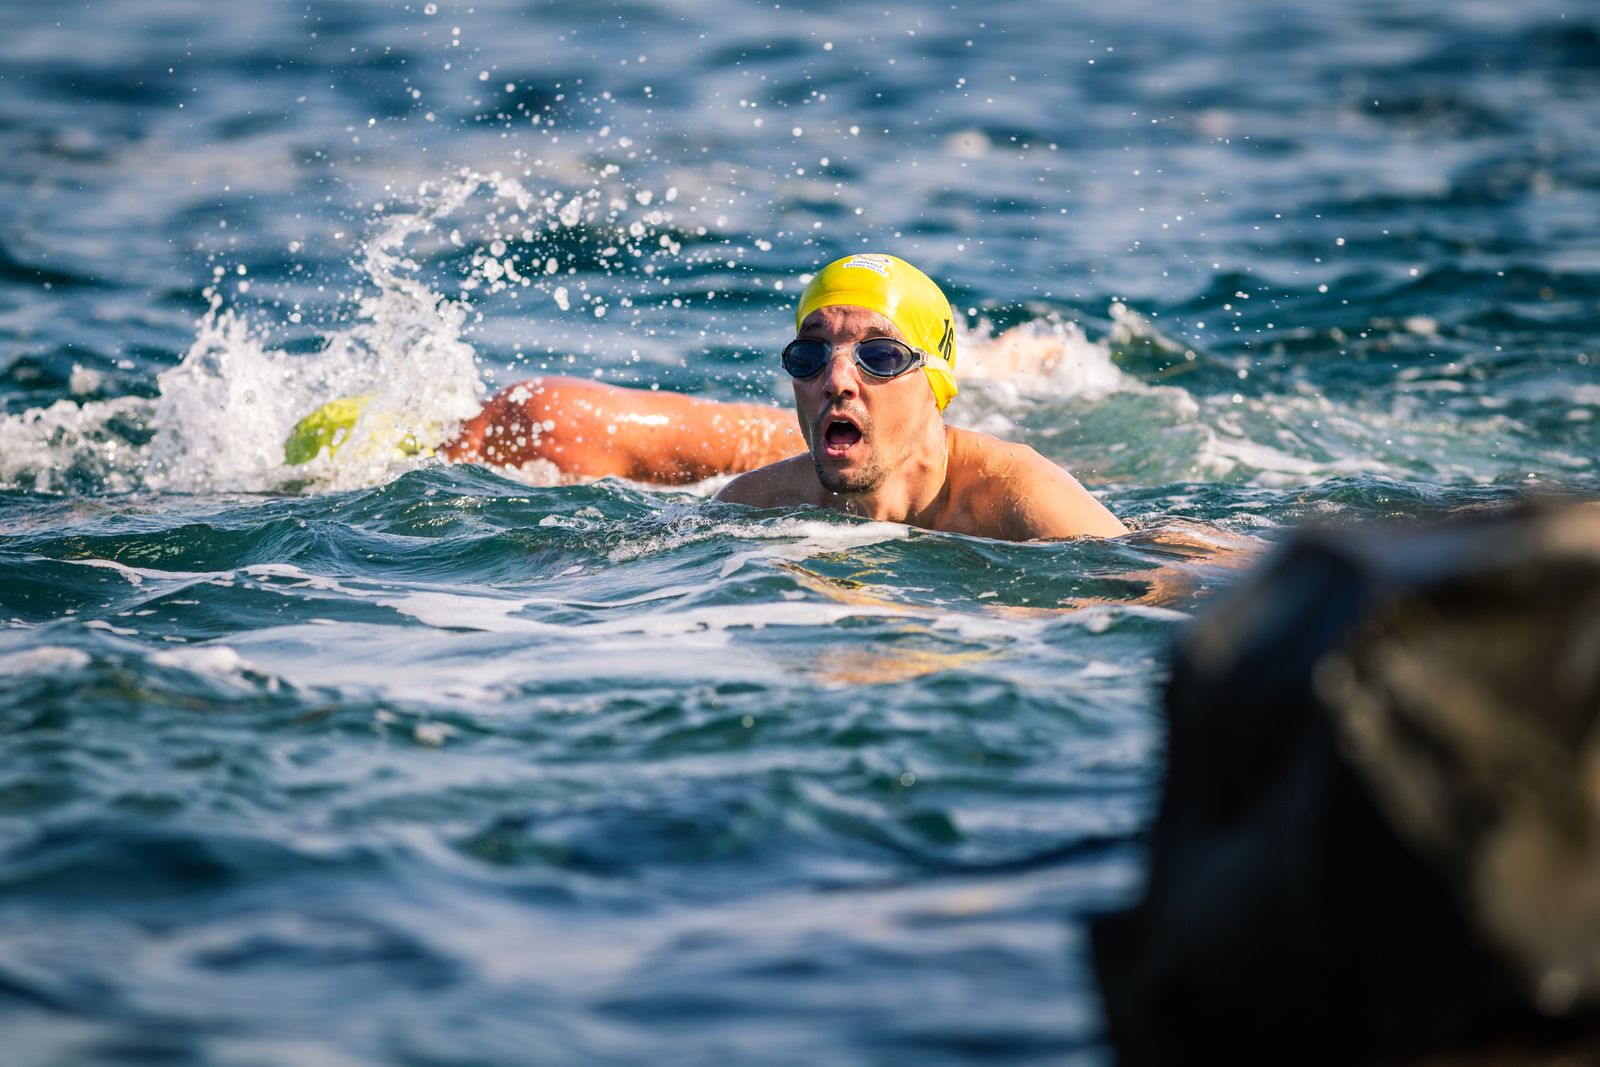 Hellespont swimmer 2018